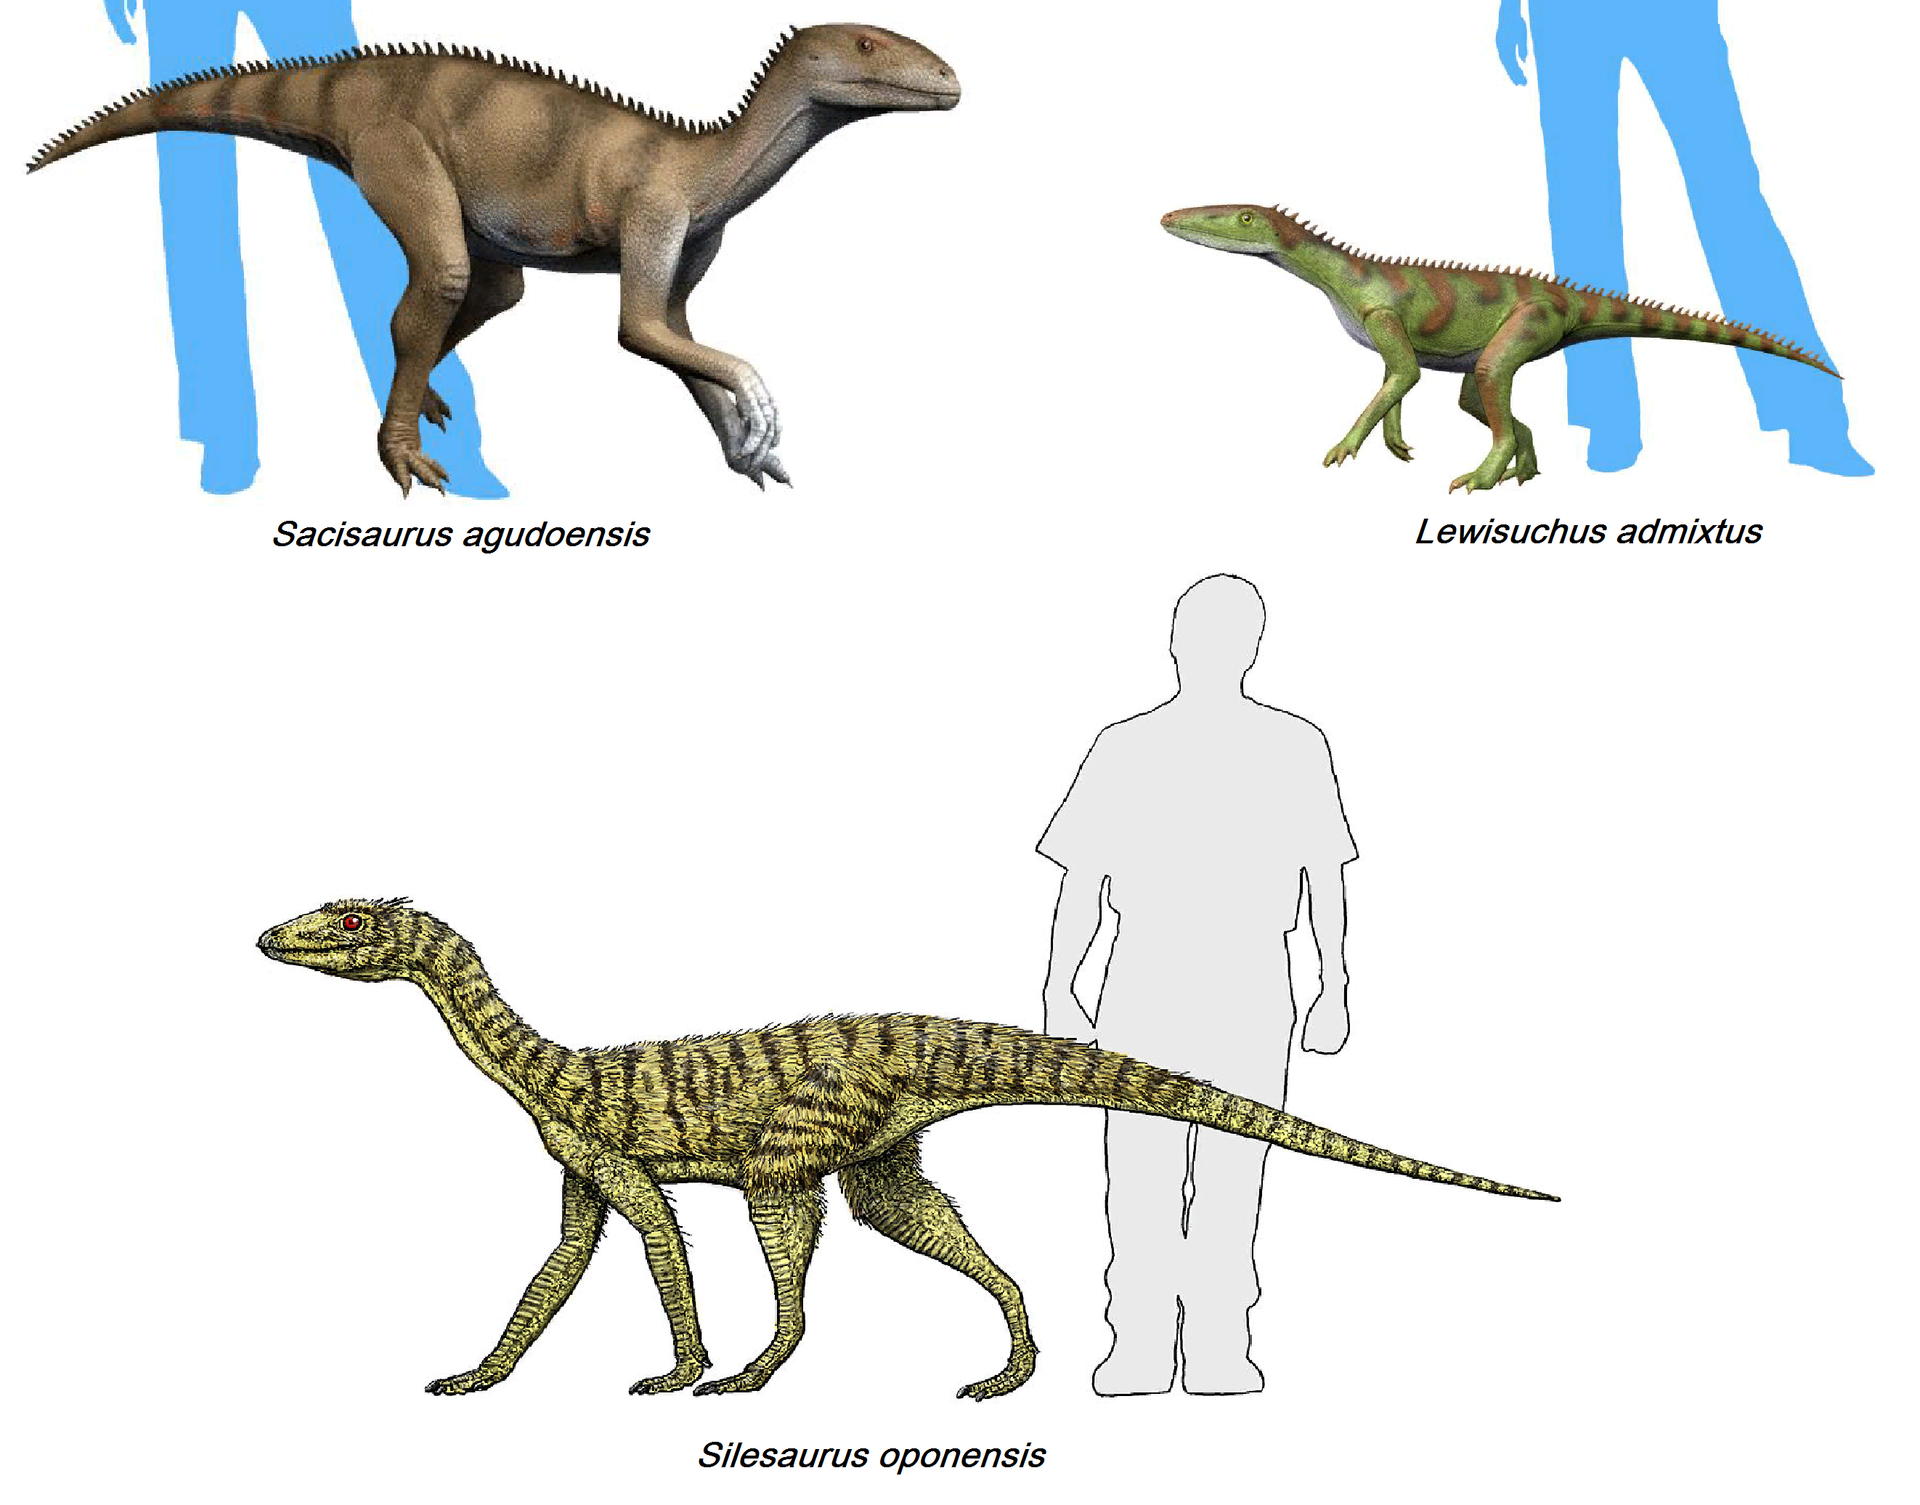 Tři zástupci čeledi Silesauridae, vývojově pokročilých dinosauromorfů velmi blízce příbuzných „pravým“ dinosaurům. Nové výzkumy naznačují, že se dokonce mohlo jednat o přímé vývojové předky všech ptakopánvých dinosaurů (Ornithischia). Kredit: Nobu Ta